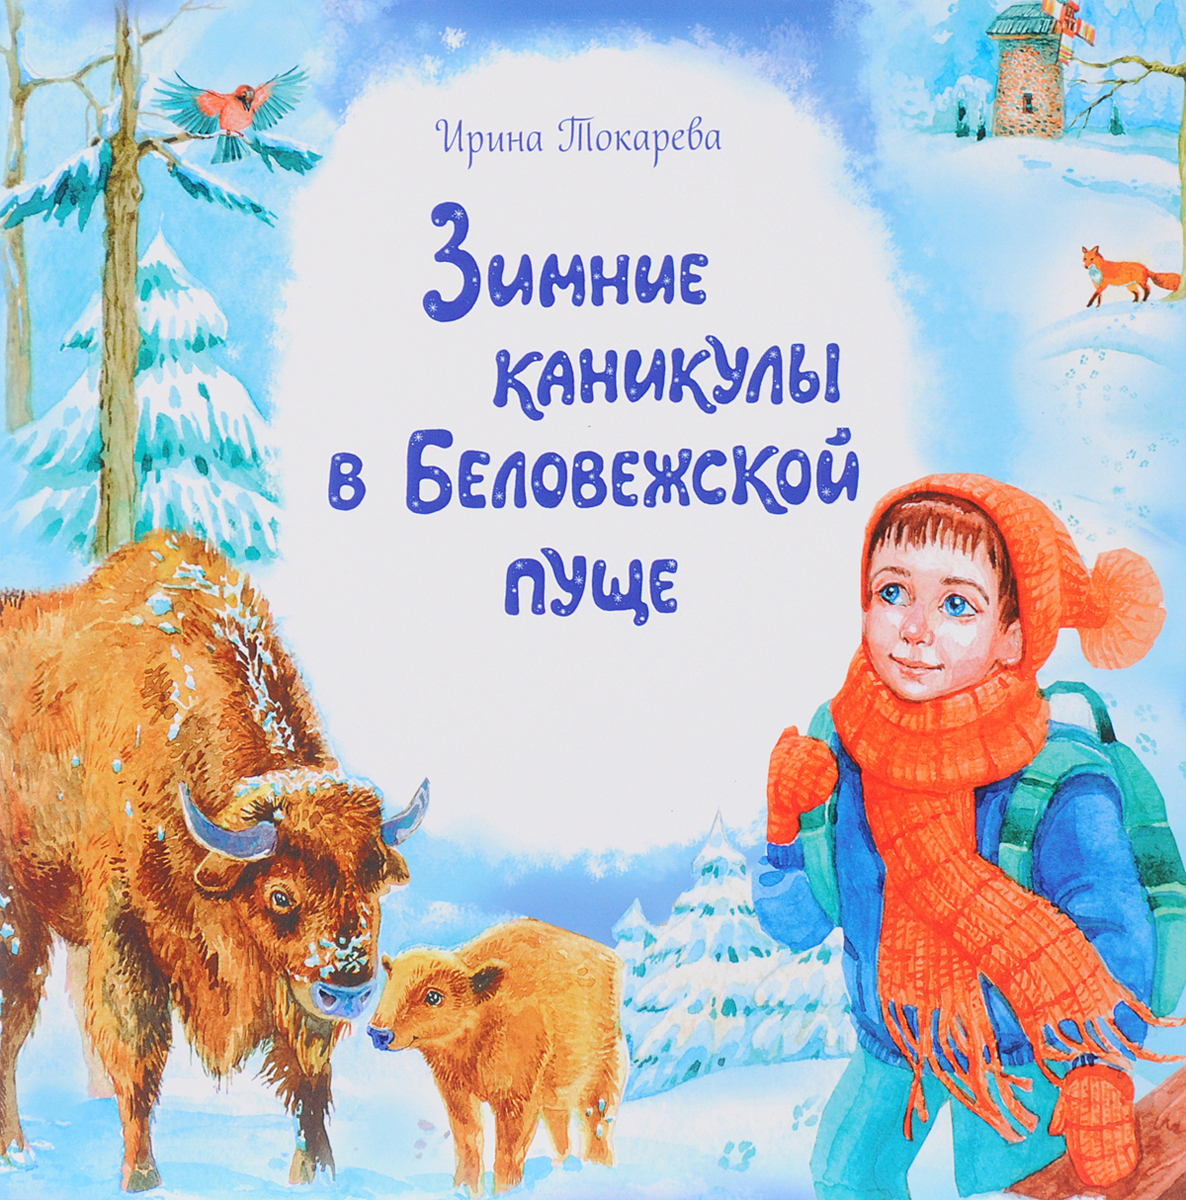 Зимние каникулы в Беловежской пуще